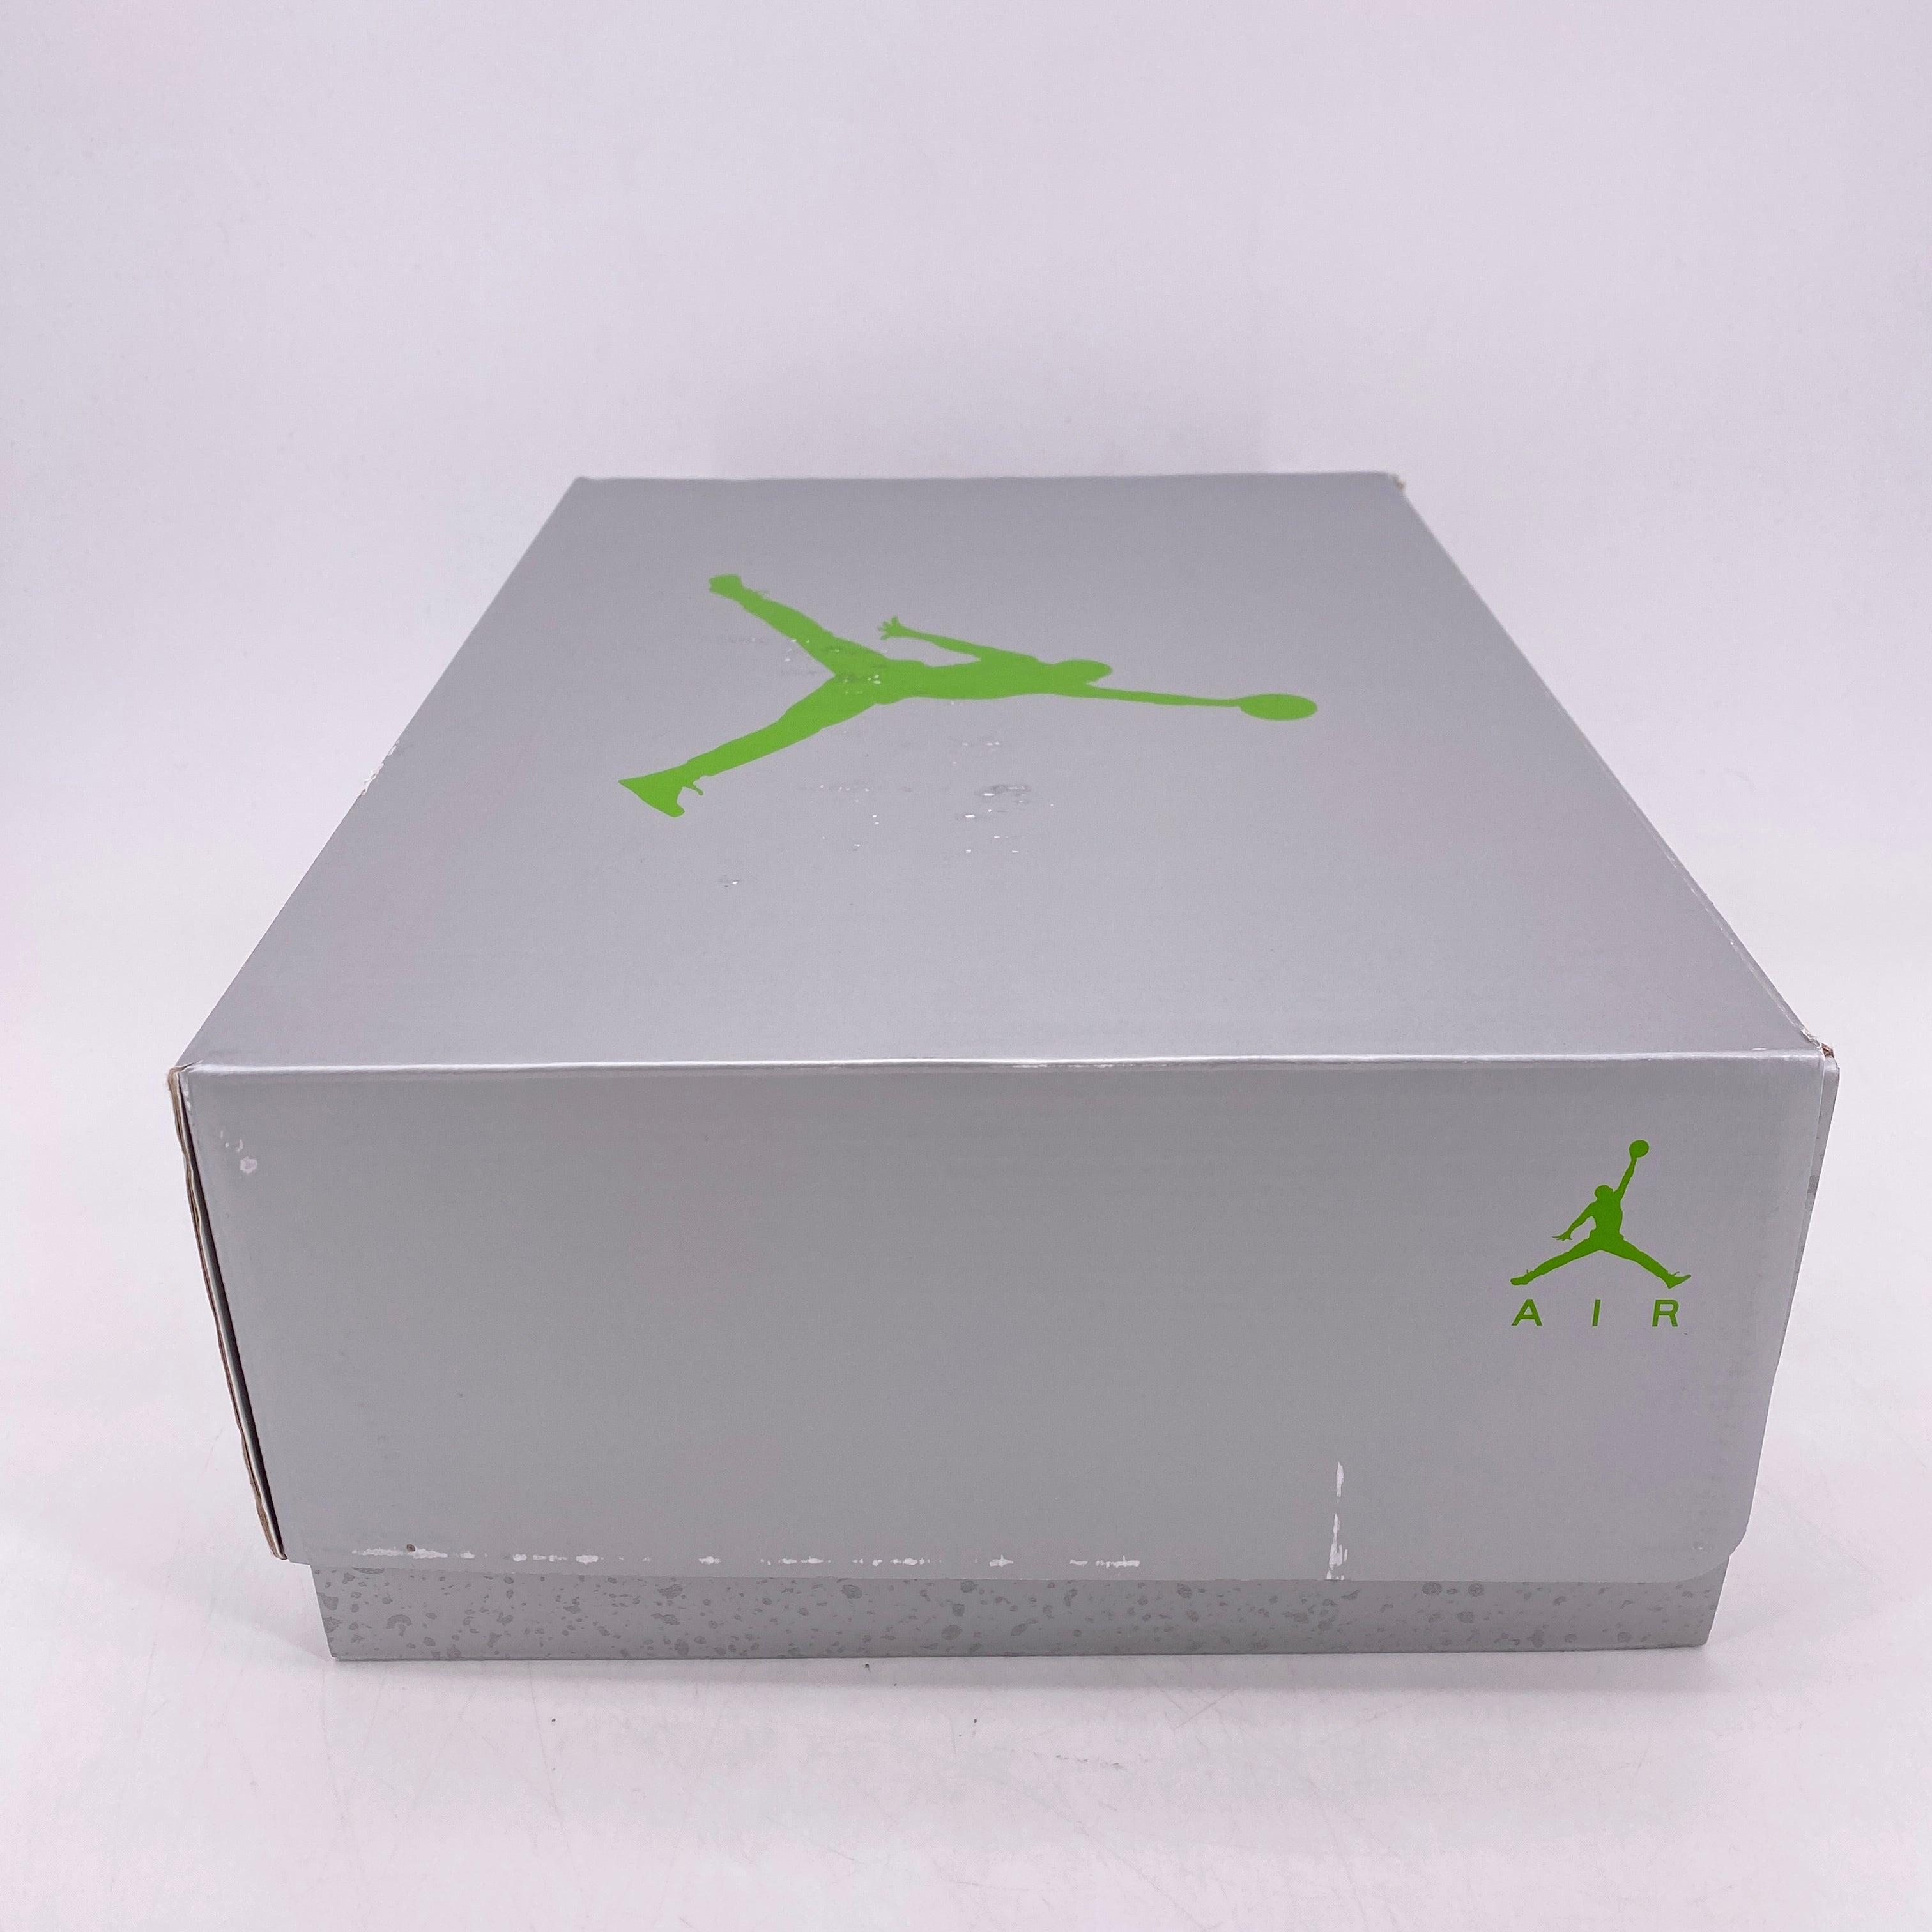 Air Jordan 5 Retro &quot;Green Bean&quot; 2022 New Size 8.5